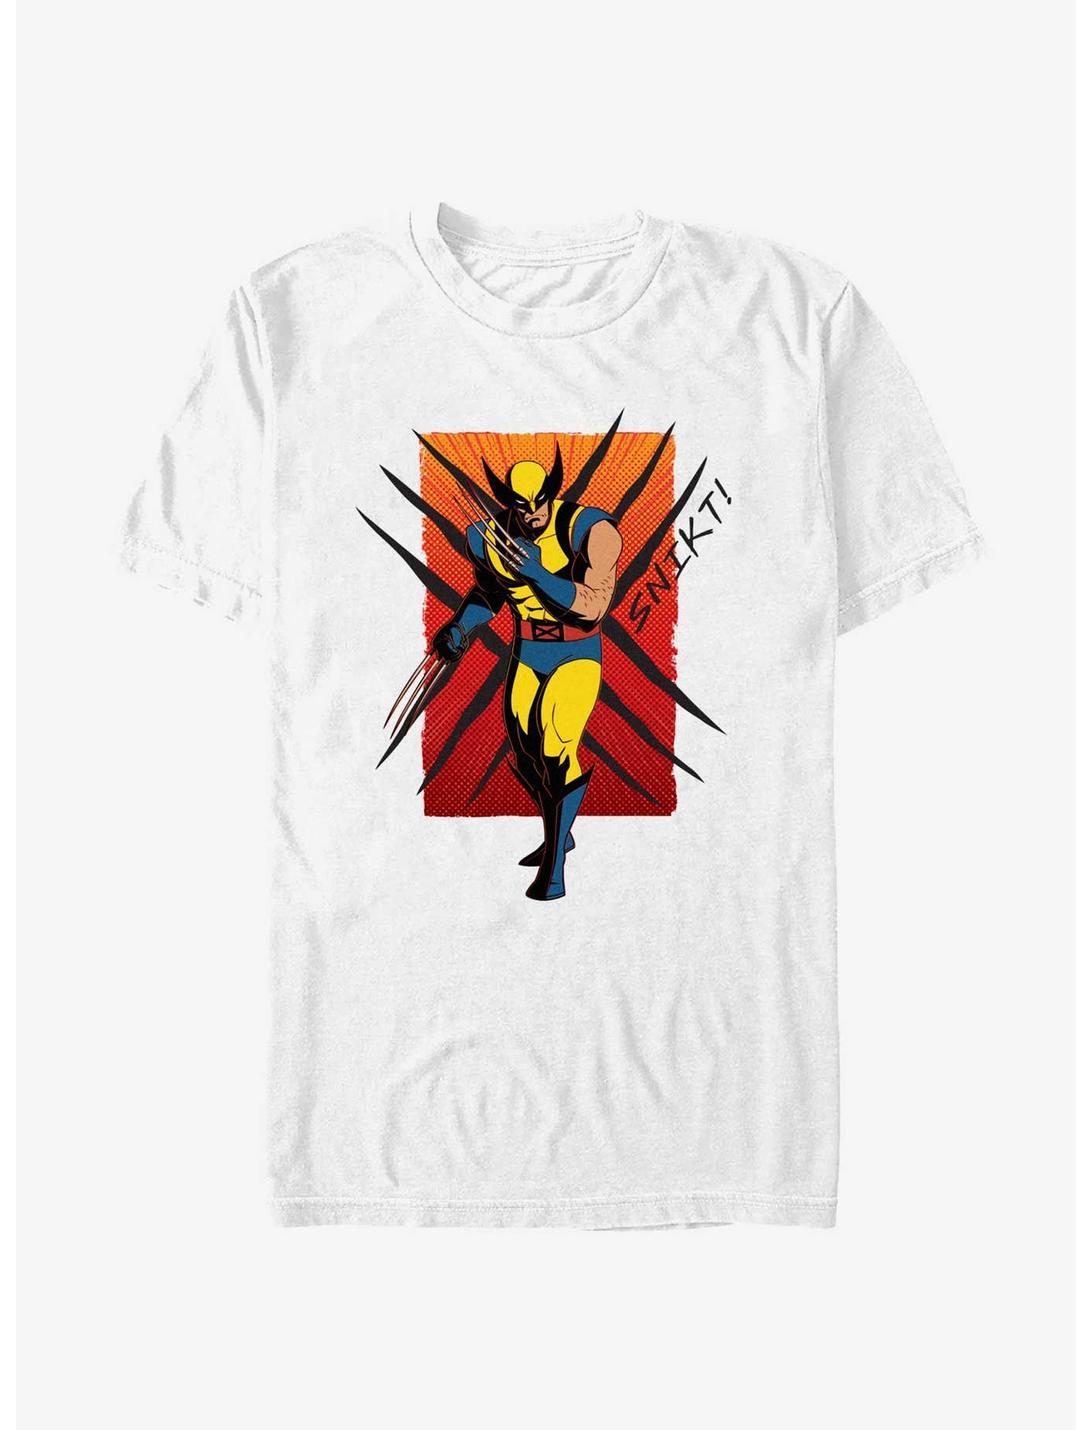 Marvel X-Men '97 Wolverine Snikt T-Shirt, WHITE, hi-res